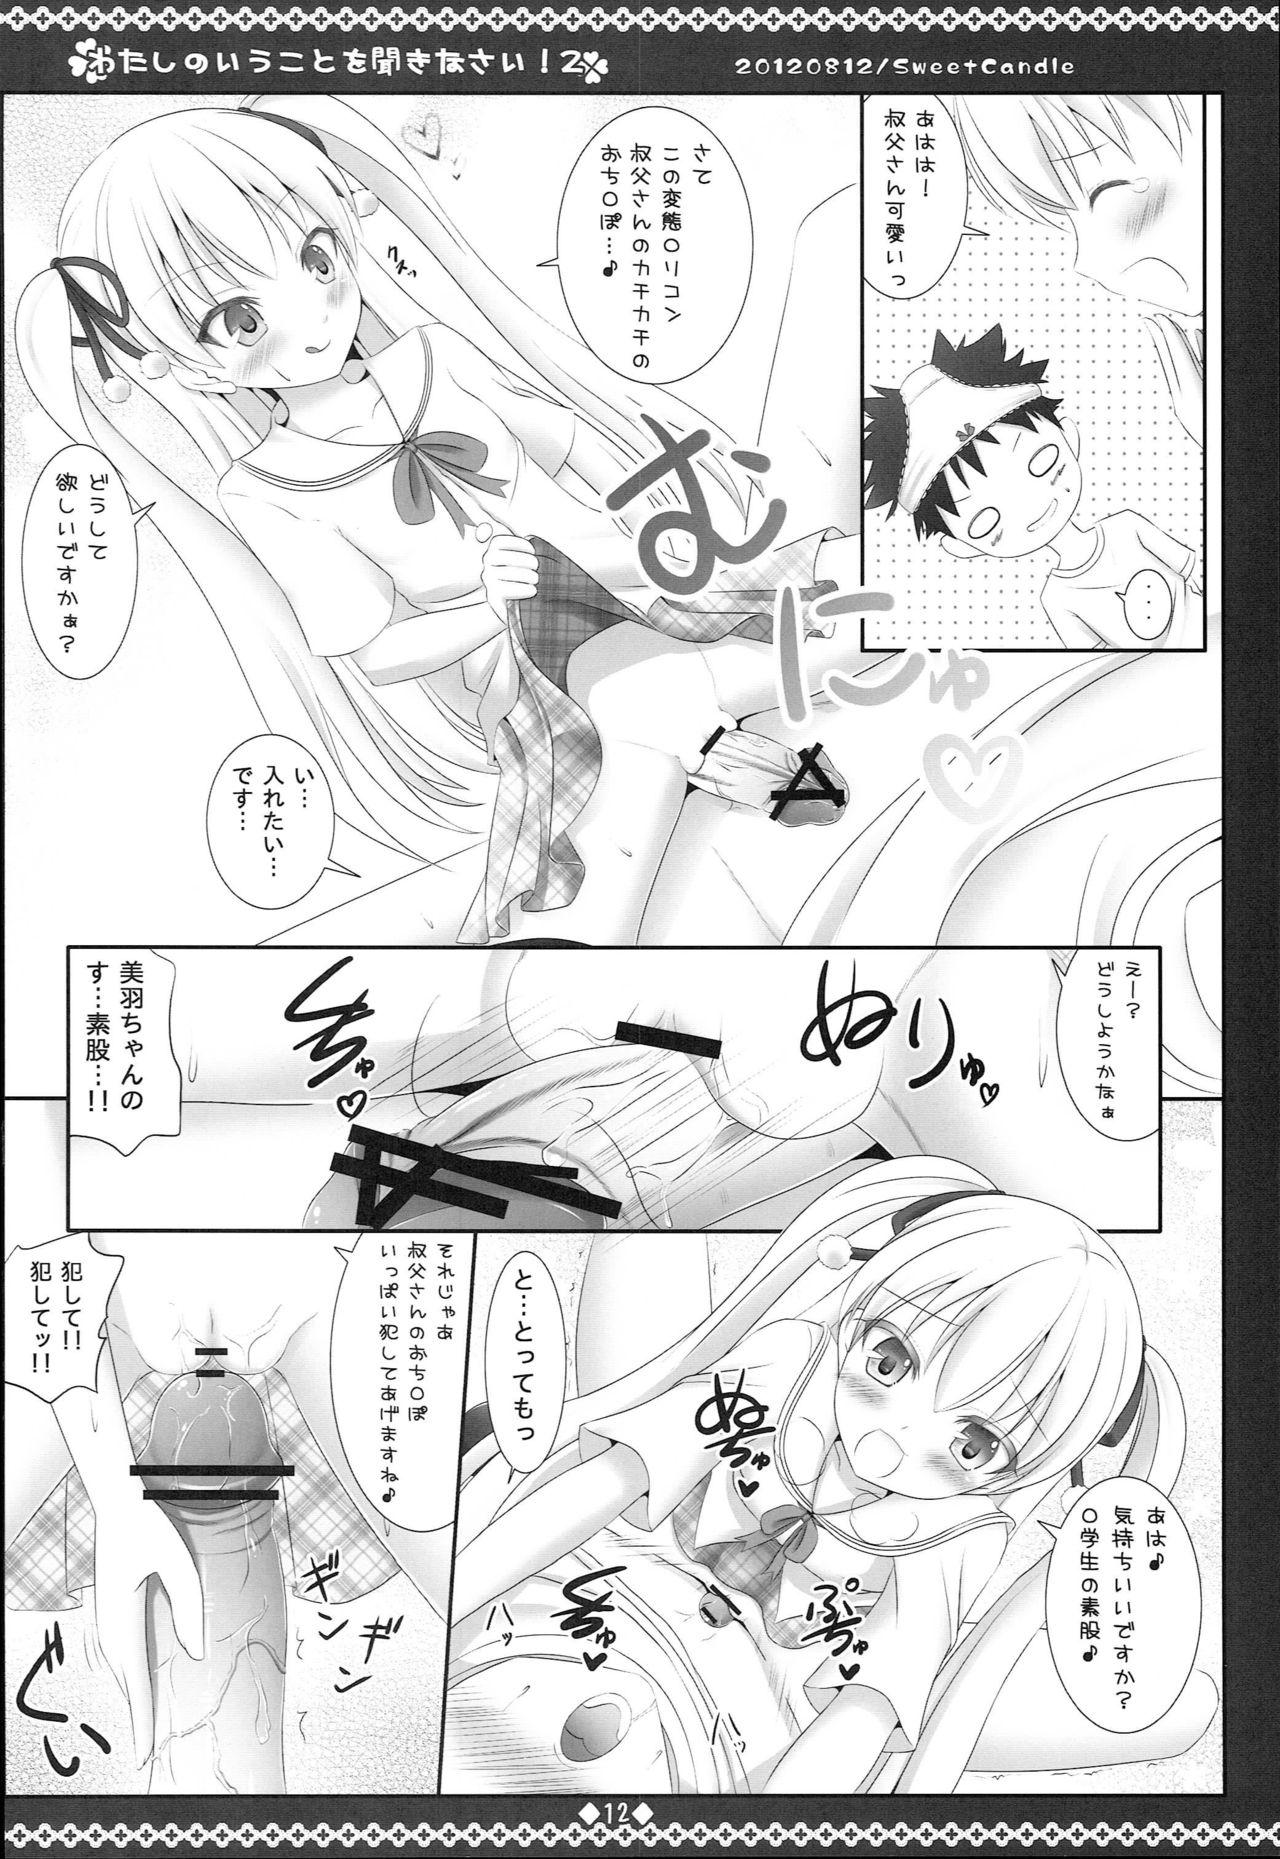 Staxxx Watashi no Iu Koto o Kikinasai! 2 - Papa no iu koto wo kikinasai Girl Fuck - Page 11